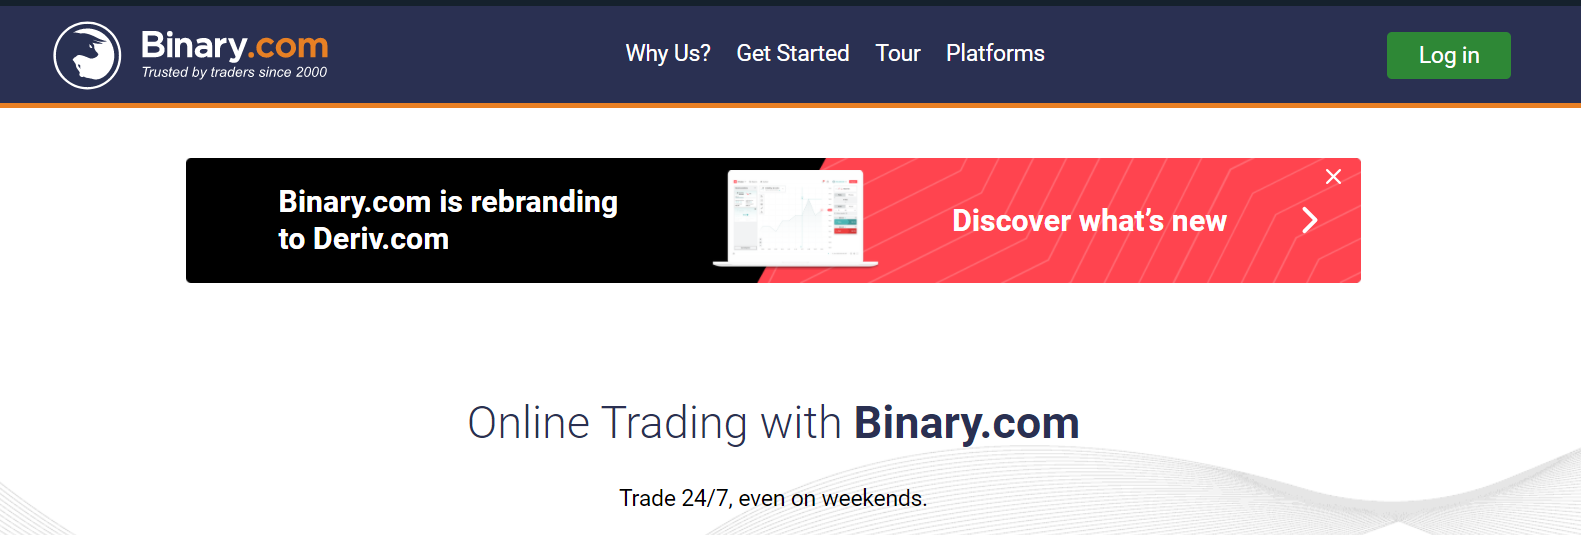 Binary.com Review - Account